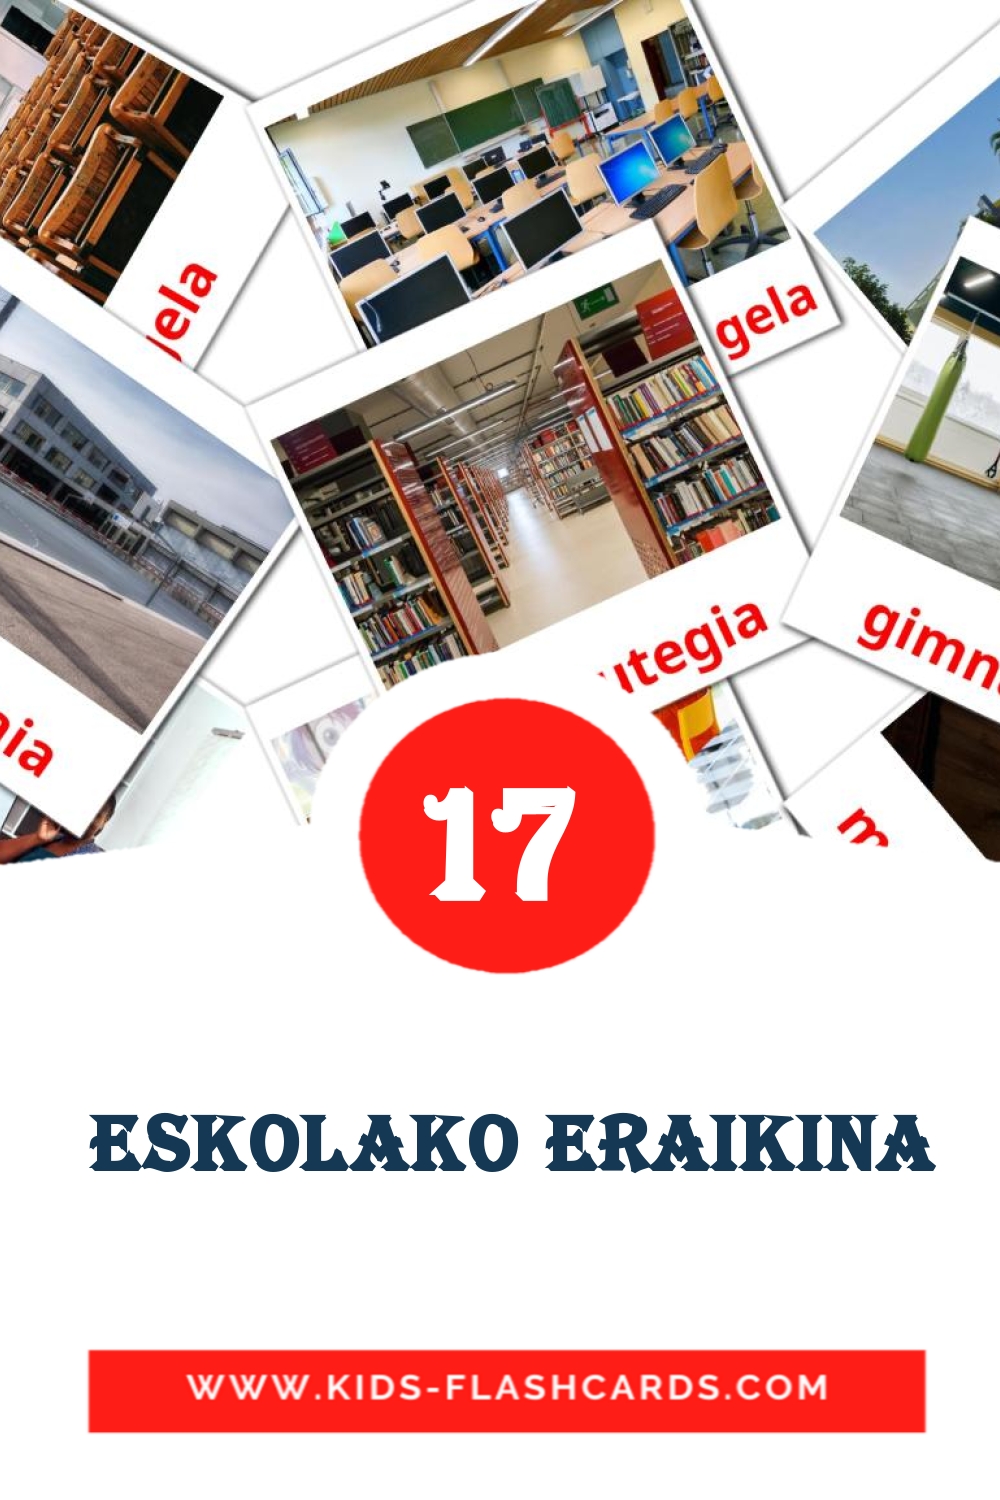 17 tarjetas didacticas de  Eskolako eraikina para el jardín de infancia en euskera